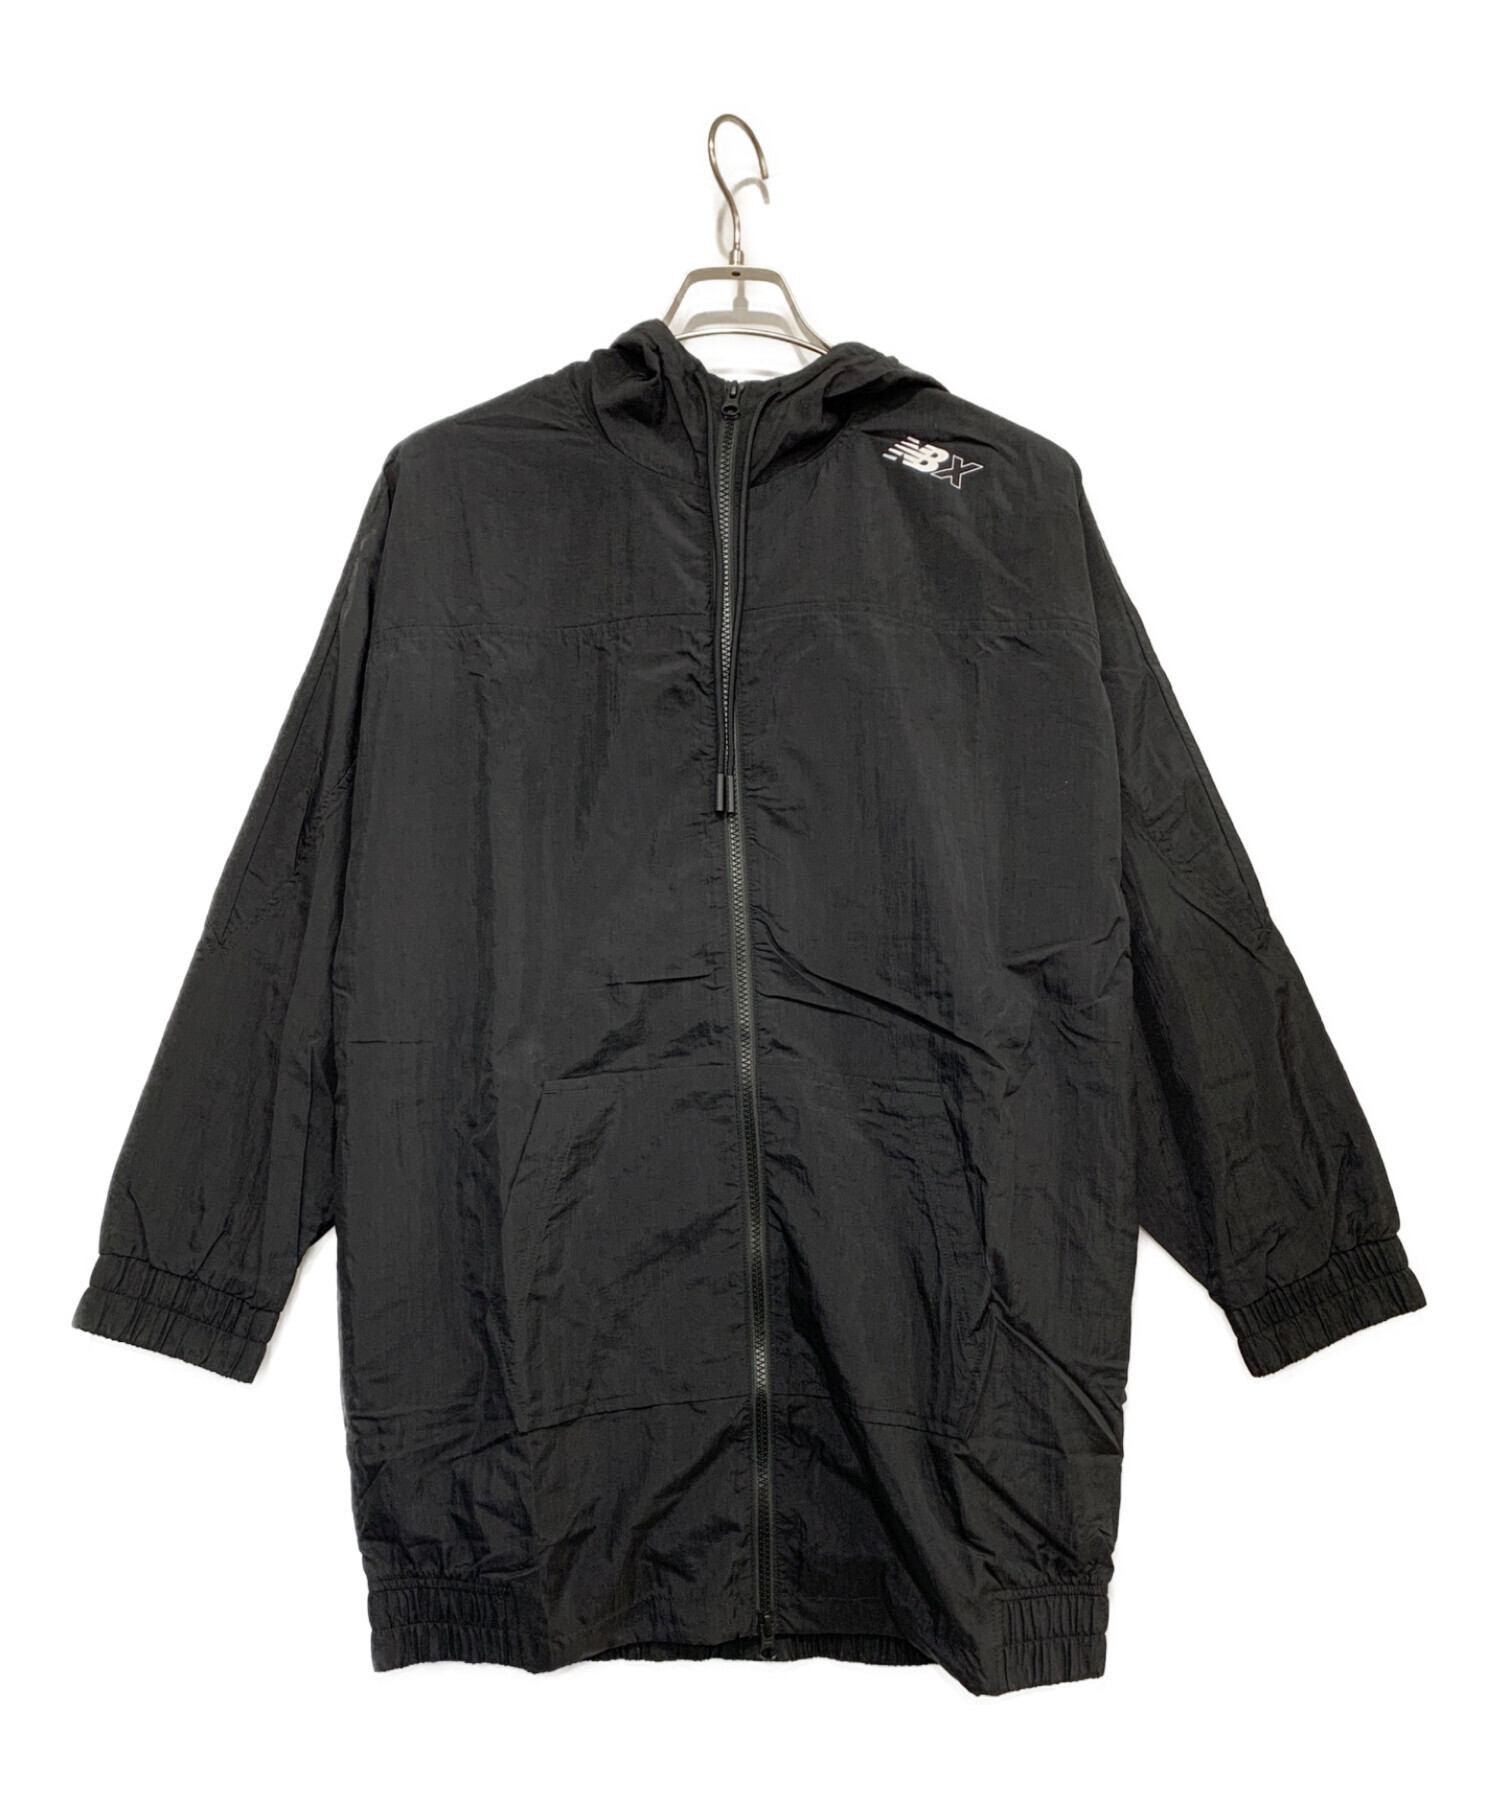 NEW BALANCE (ニューバランス) ウーブンロングテイルジャケット ブラック サイズ:S